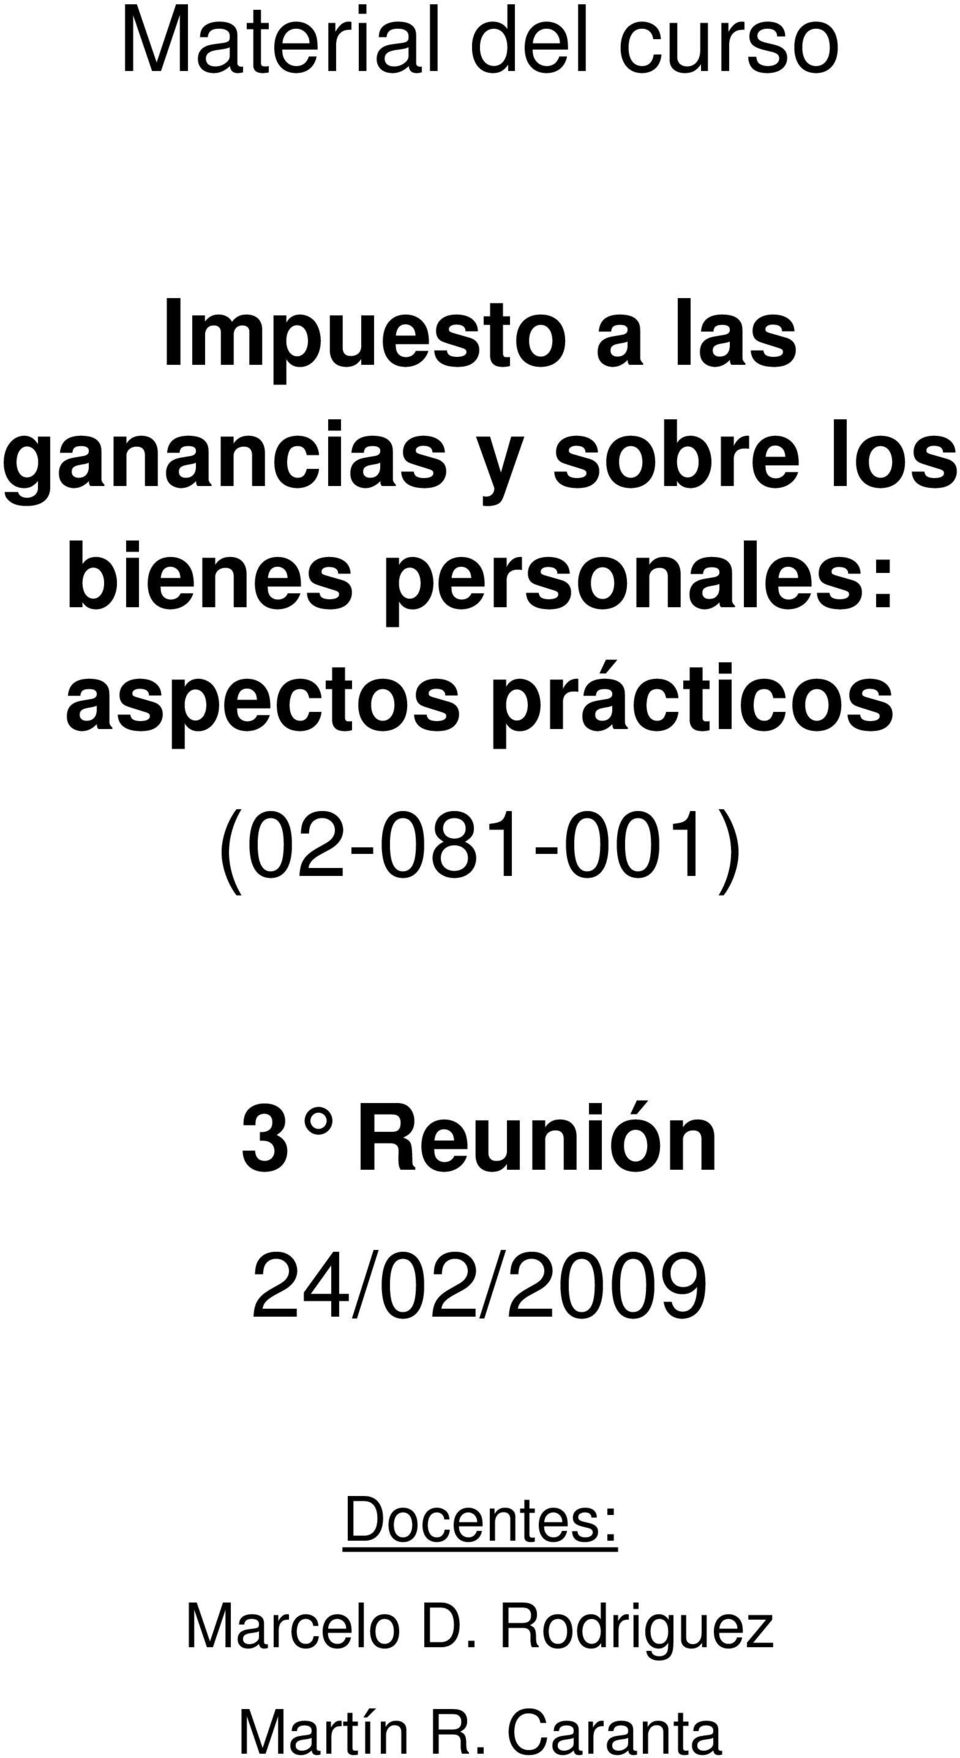 prácticos (02-081-001) 3 Reunión 24/02/2009